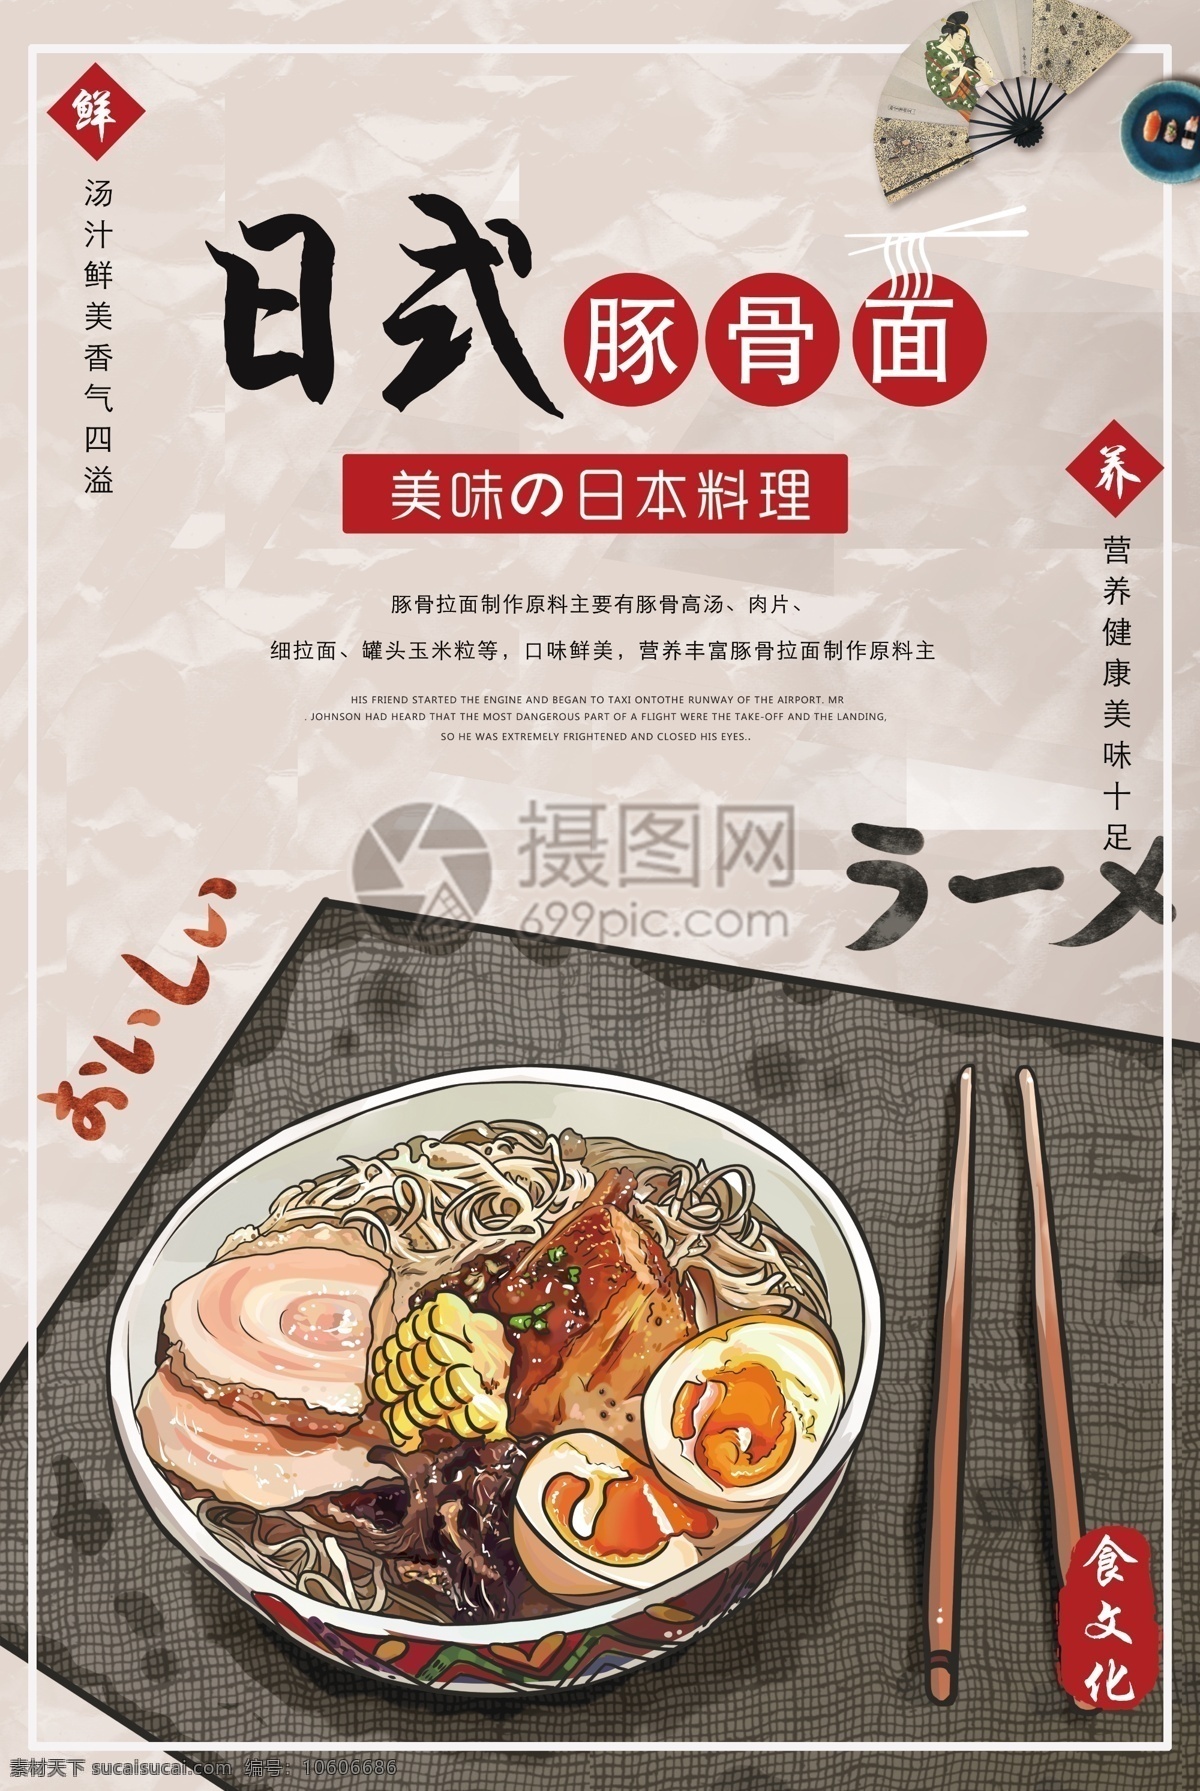 日式 豚 骨 海报 手绘图 豚骨面 日本美食 美食海报 美味 日式拉面海报 面食